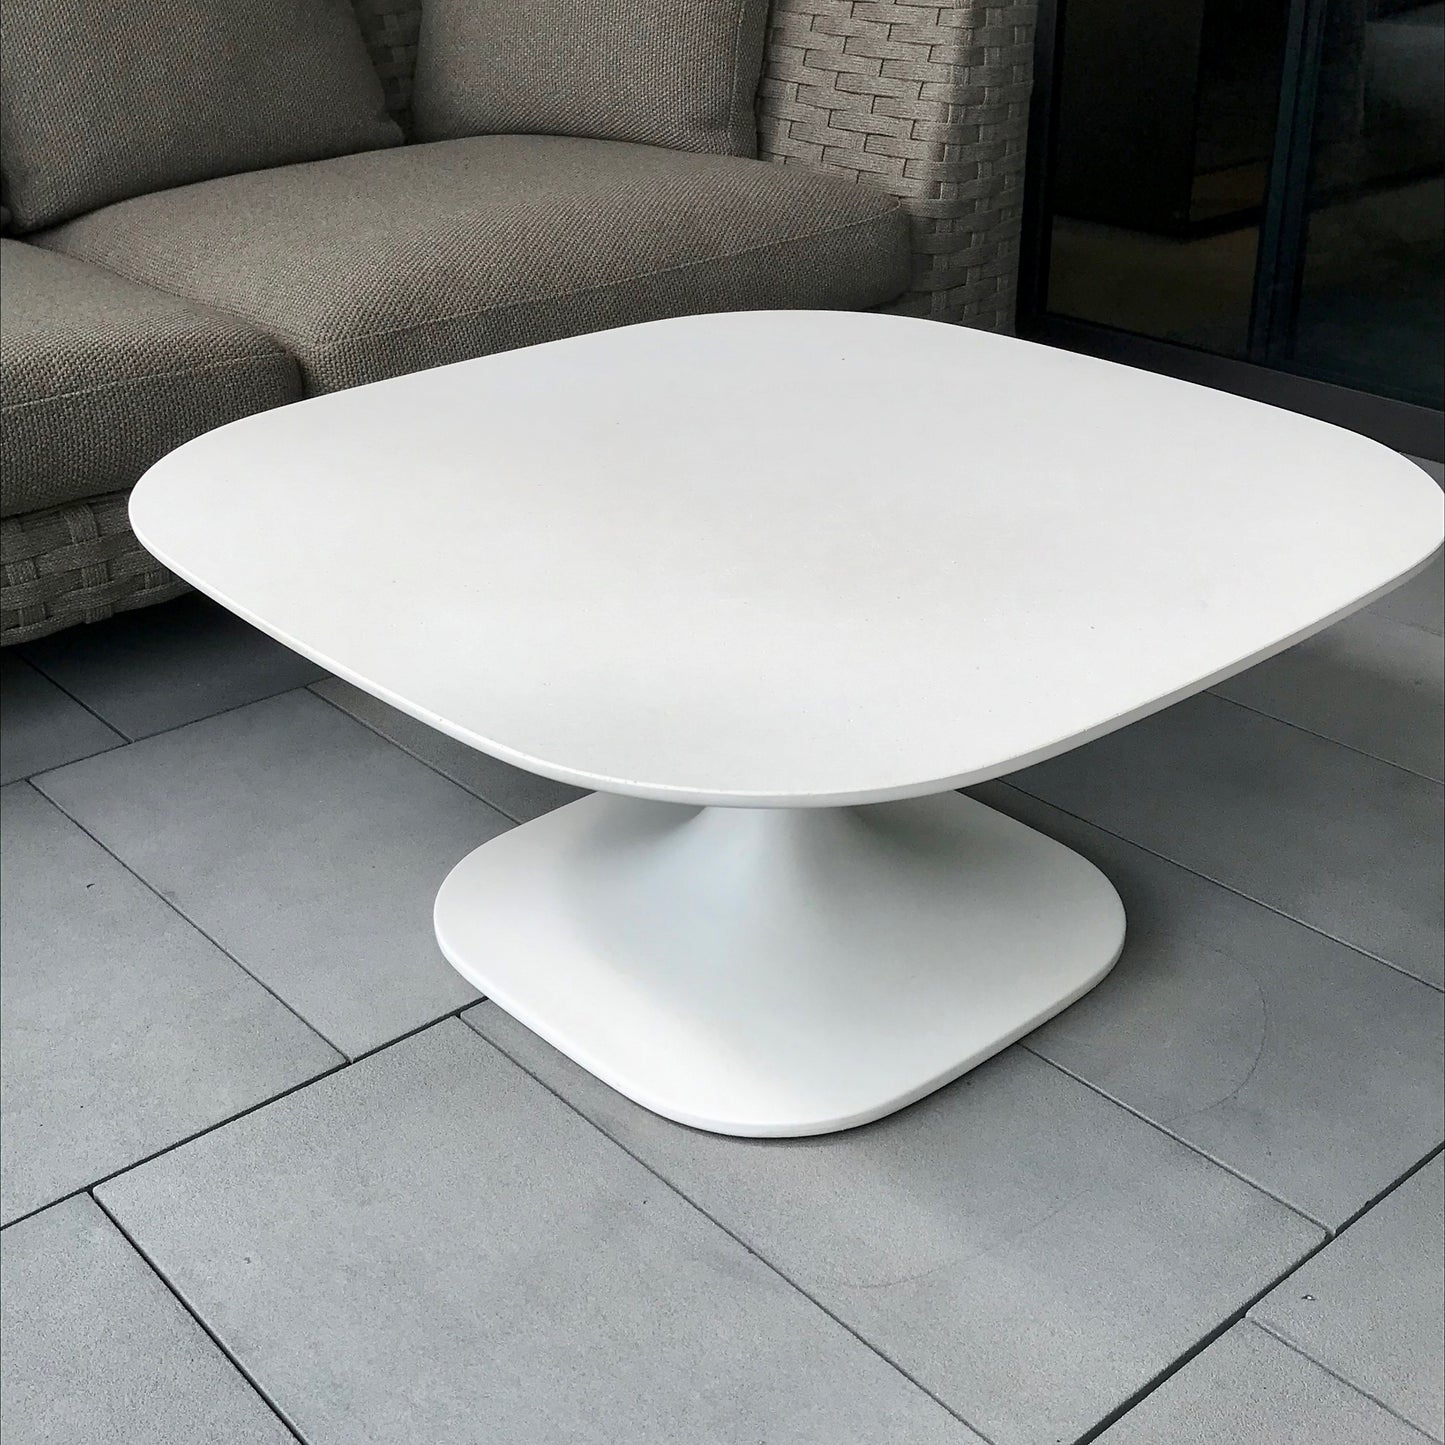 Fiore Small Table in White Cement by Naoto Fukasawa for B&B Italia